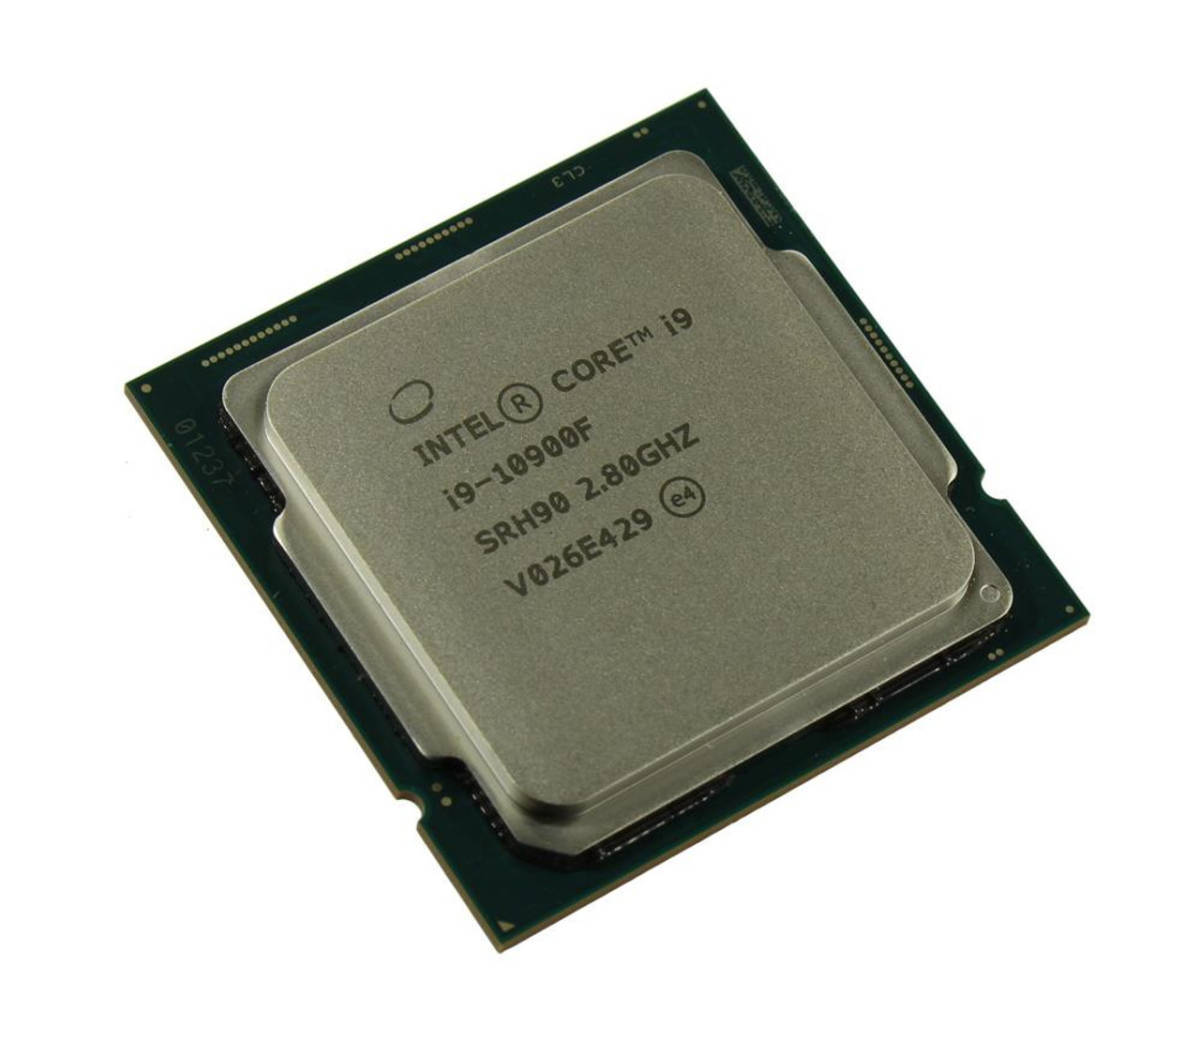 Intel Core i9-10900F SRH90 10C 2.8GHz 20MB 65W LGA1200